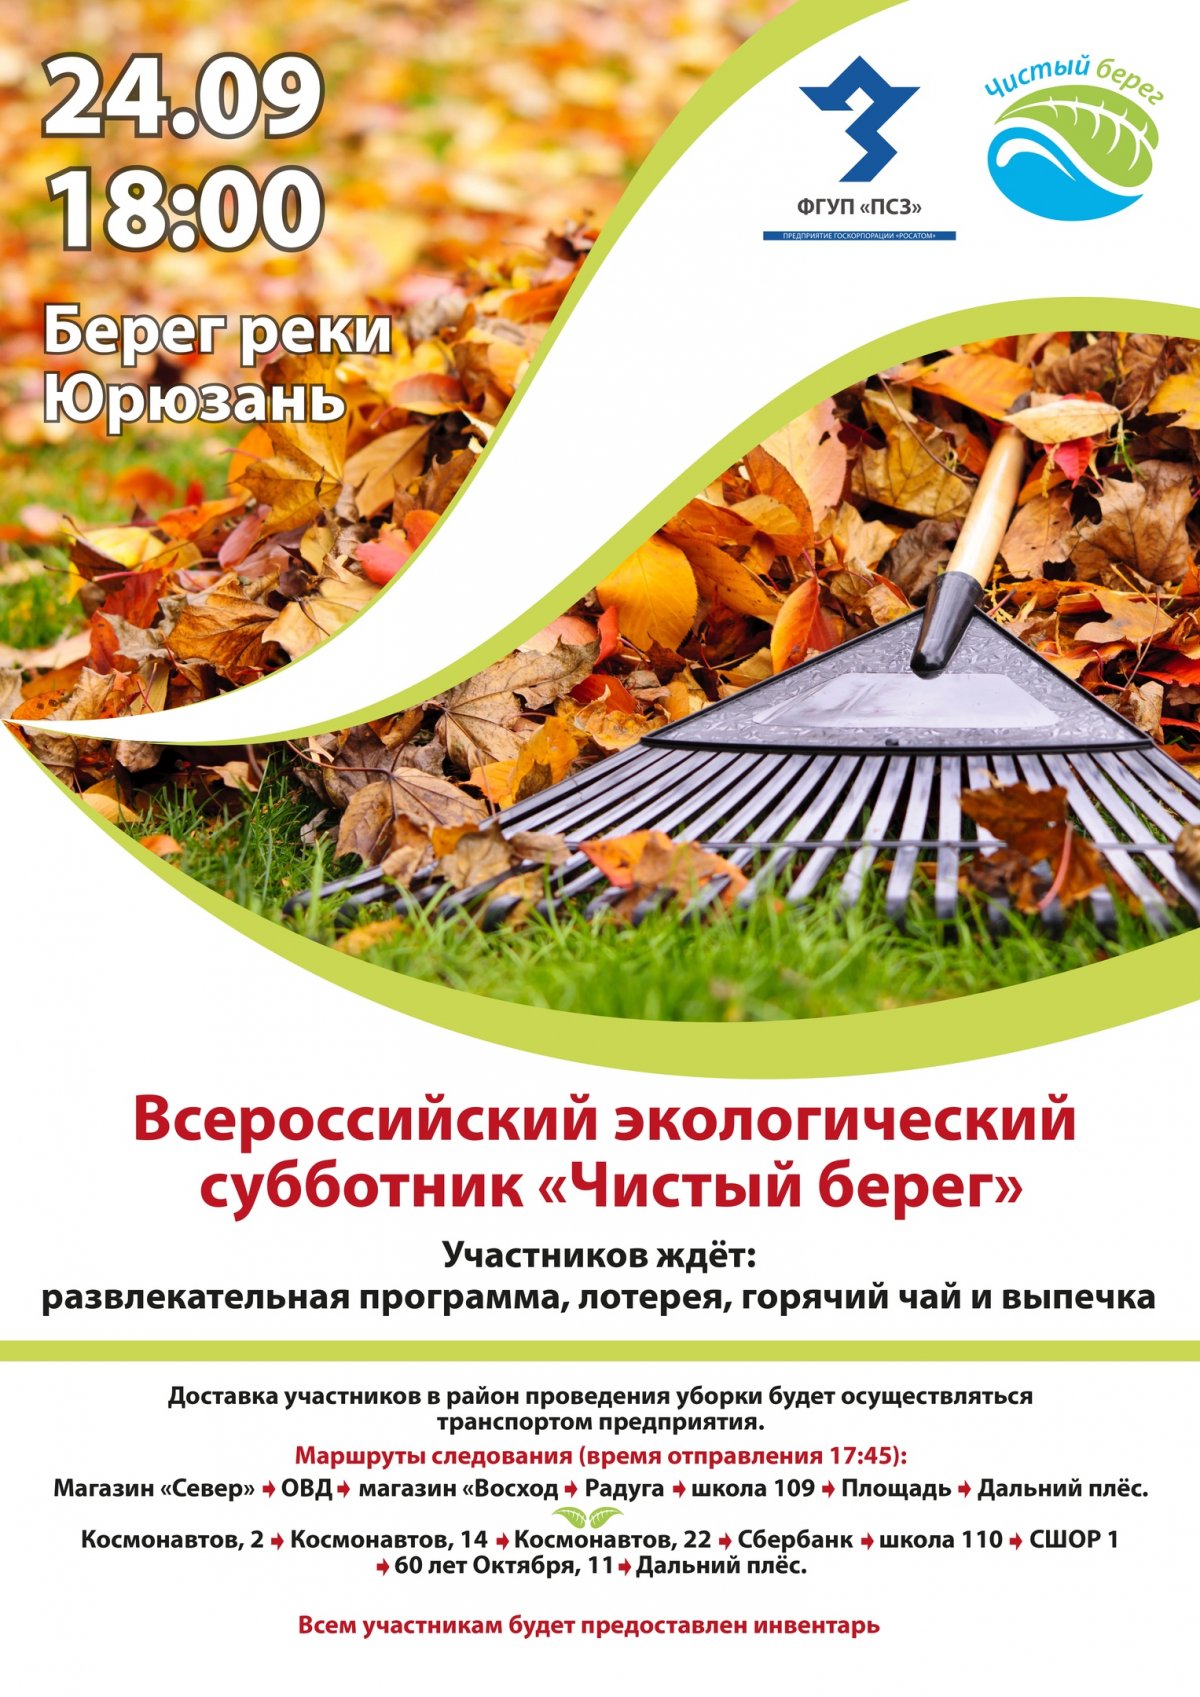 24 сентября состоится Всероссийский экологический субботник "Чистый берег". Каждого